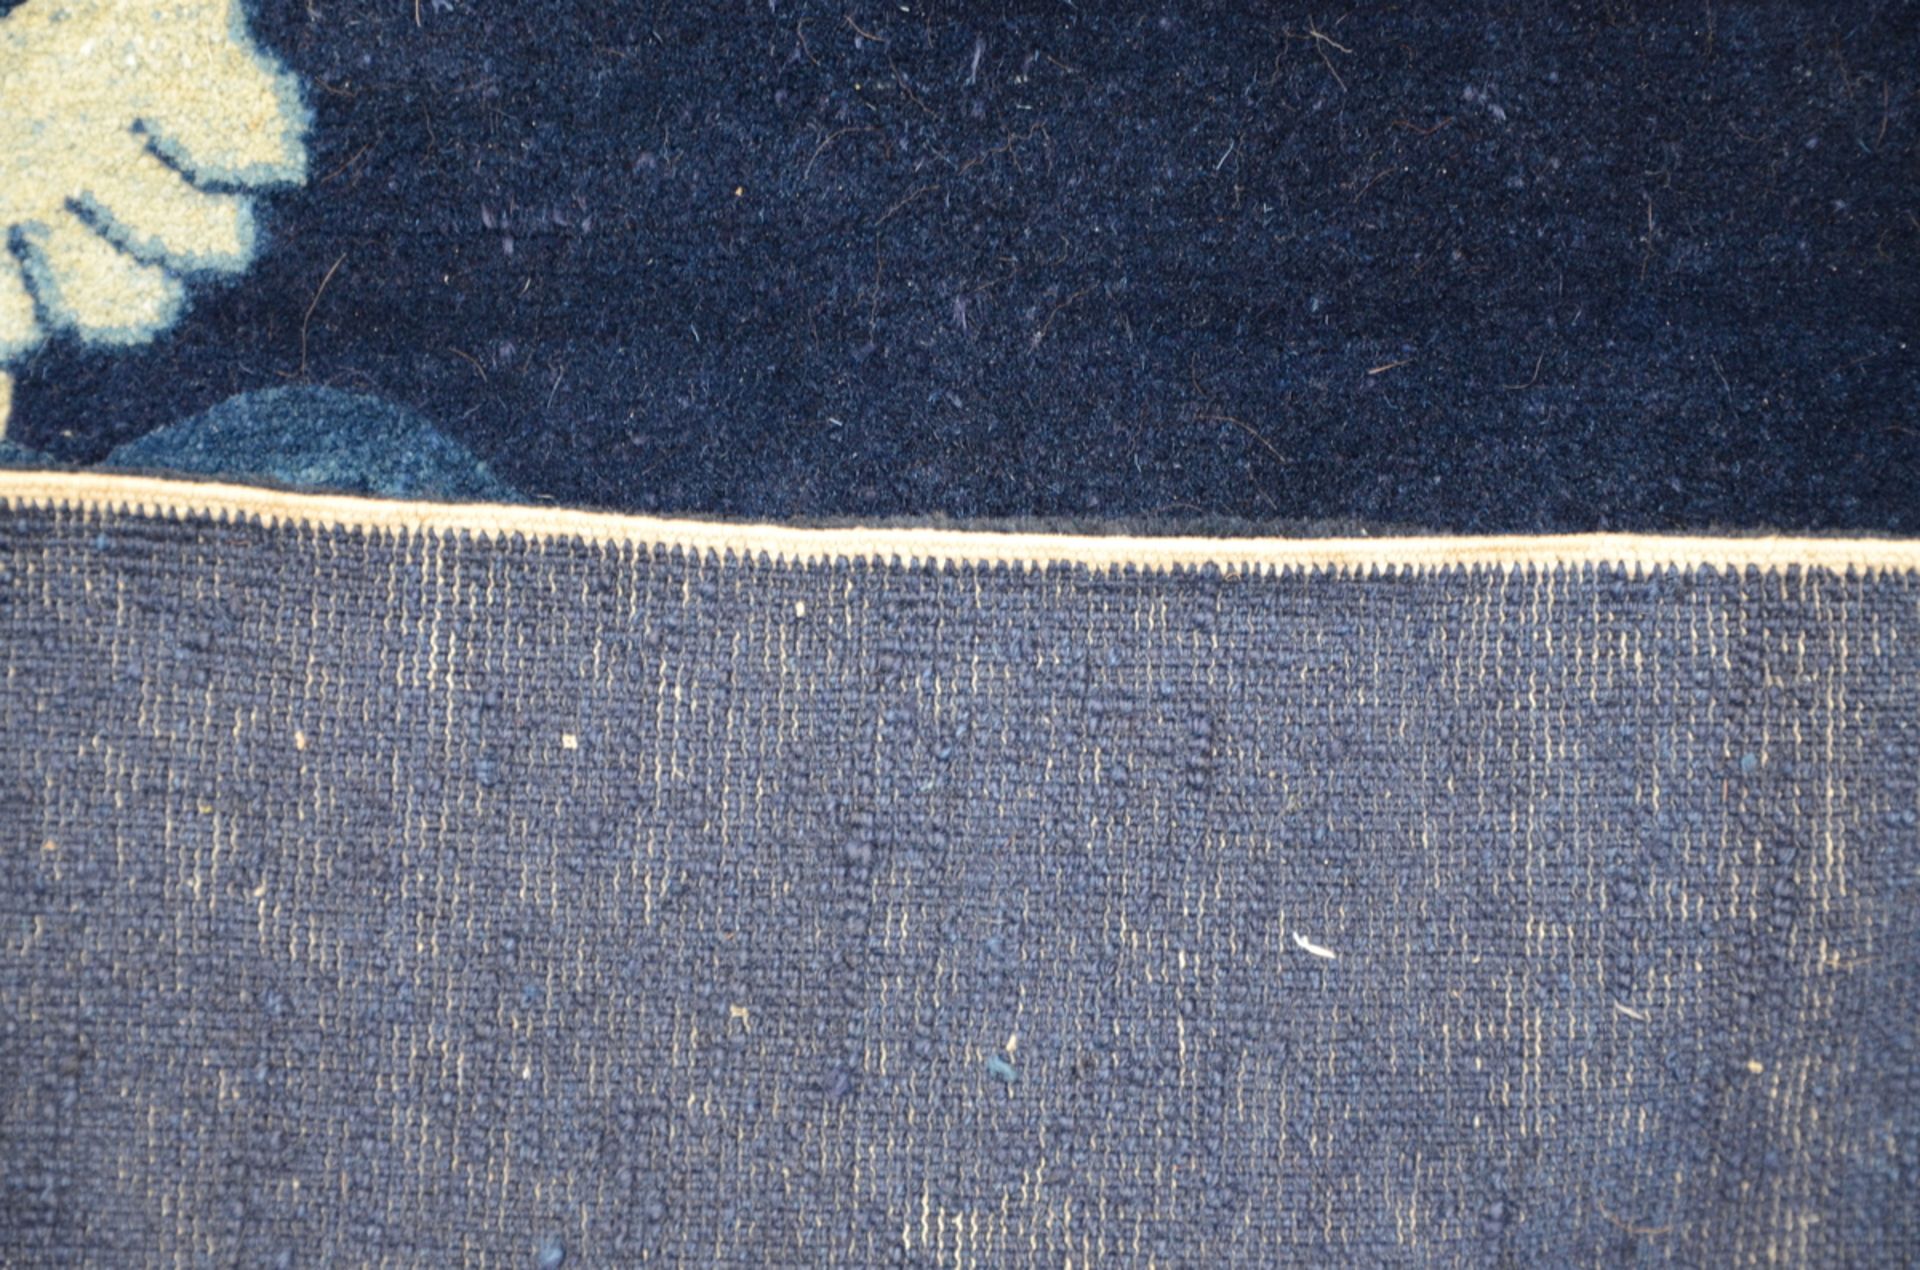 Chinese wool carpet 'Foo dog' (182x125 cm) - Image 4 of 4